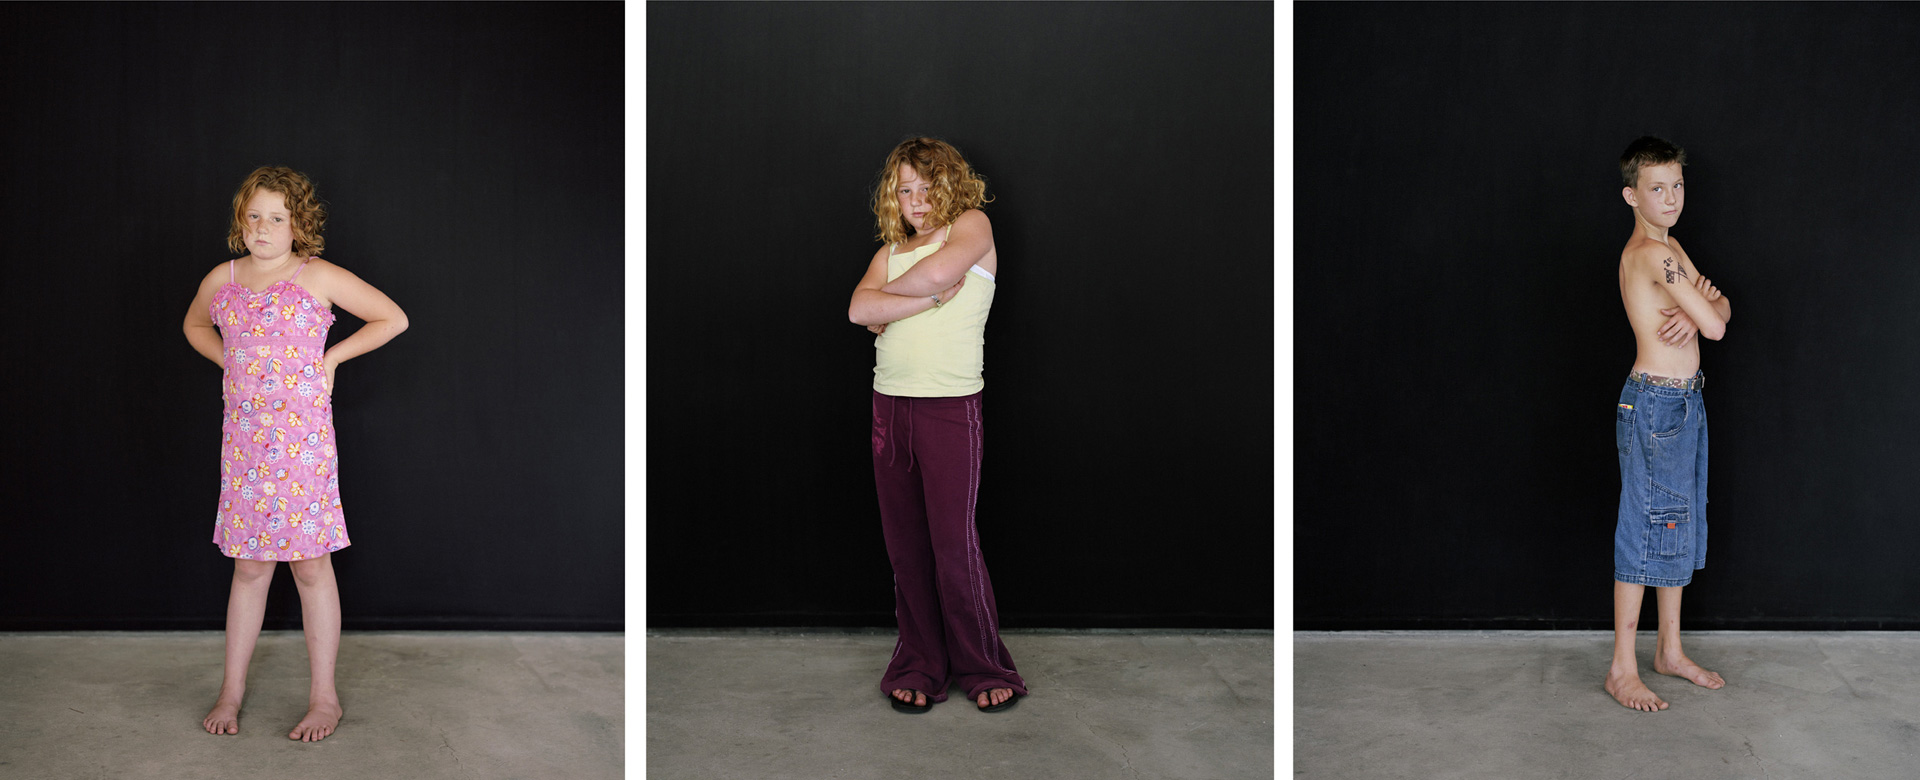 Sharon Lockhart - Pine Flat Portrait Studio, Sarah, Sarah, Mikey, 2005, three framed chromogenic prints